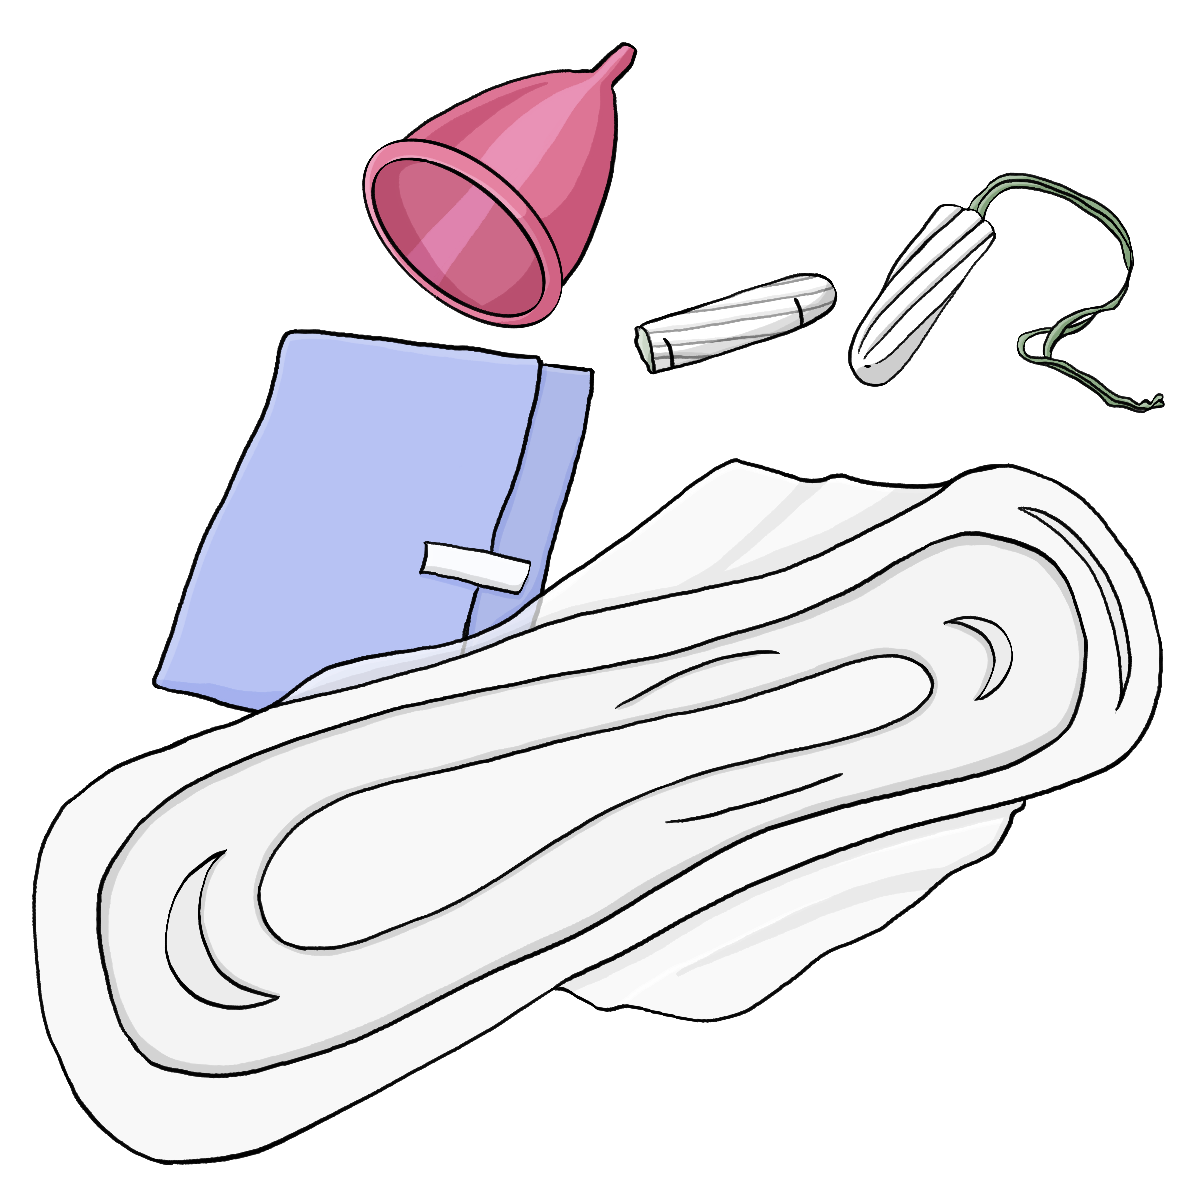 Eine Binde in der Verpackung, eine ausgepackte Binde, ein Tampon mit Plastikhülle, ein ausgepackter Tampon und eine Menstruationstasse. 